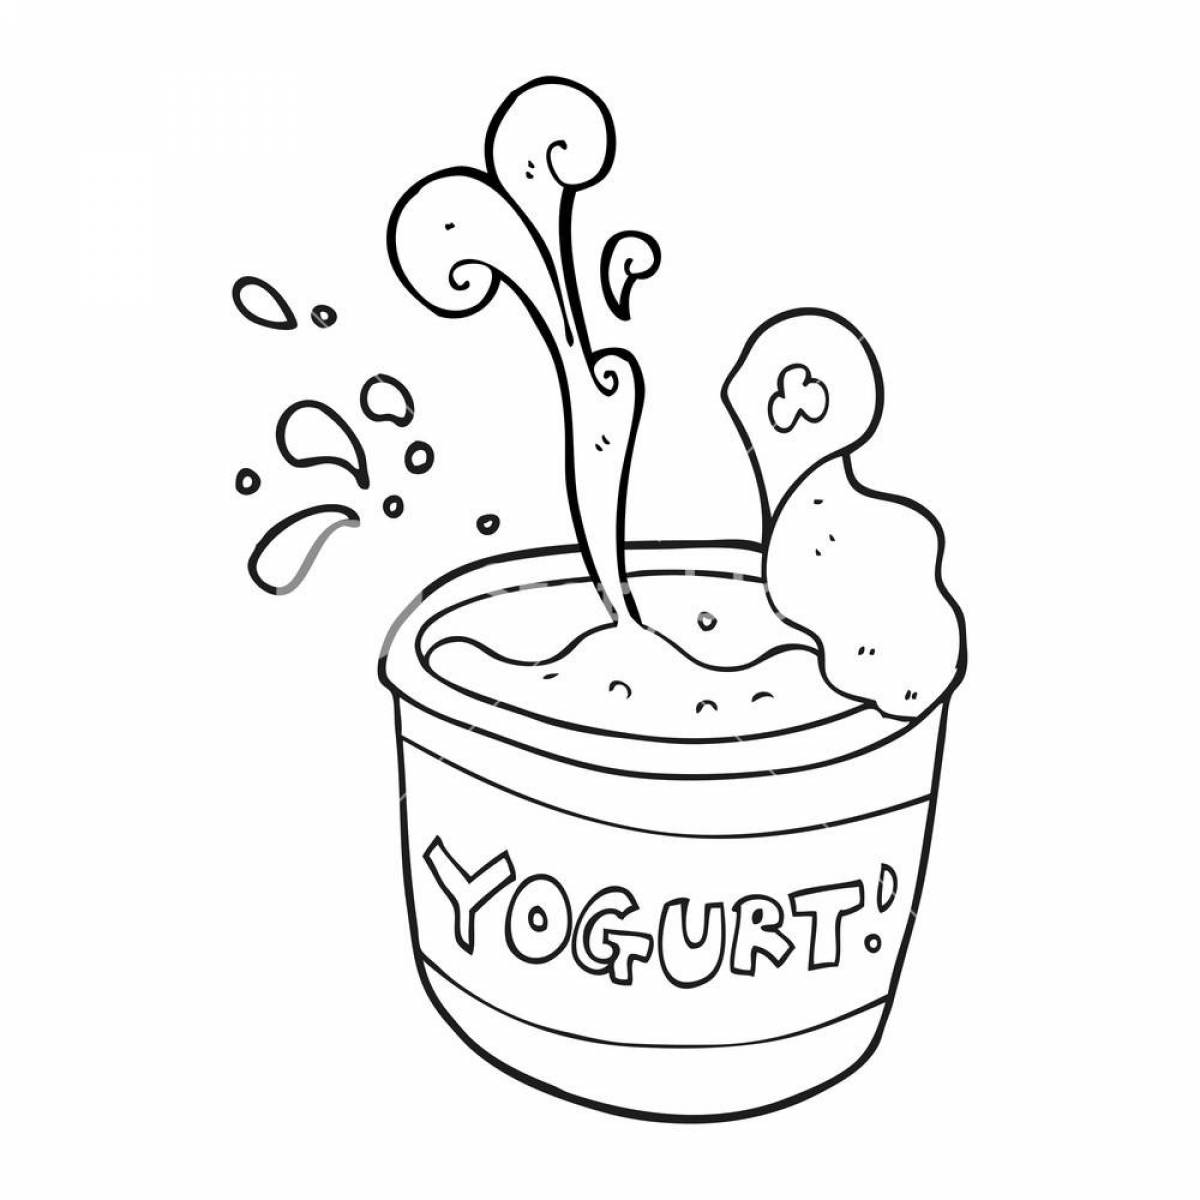 Йогурт в черно-белом для печати для детей